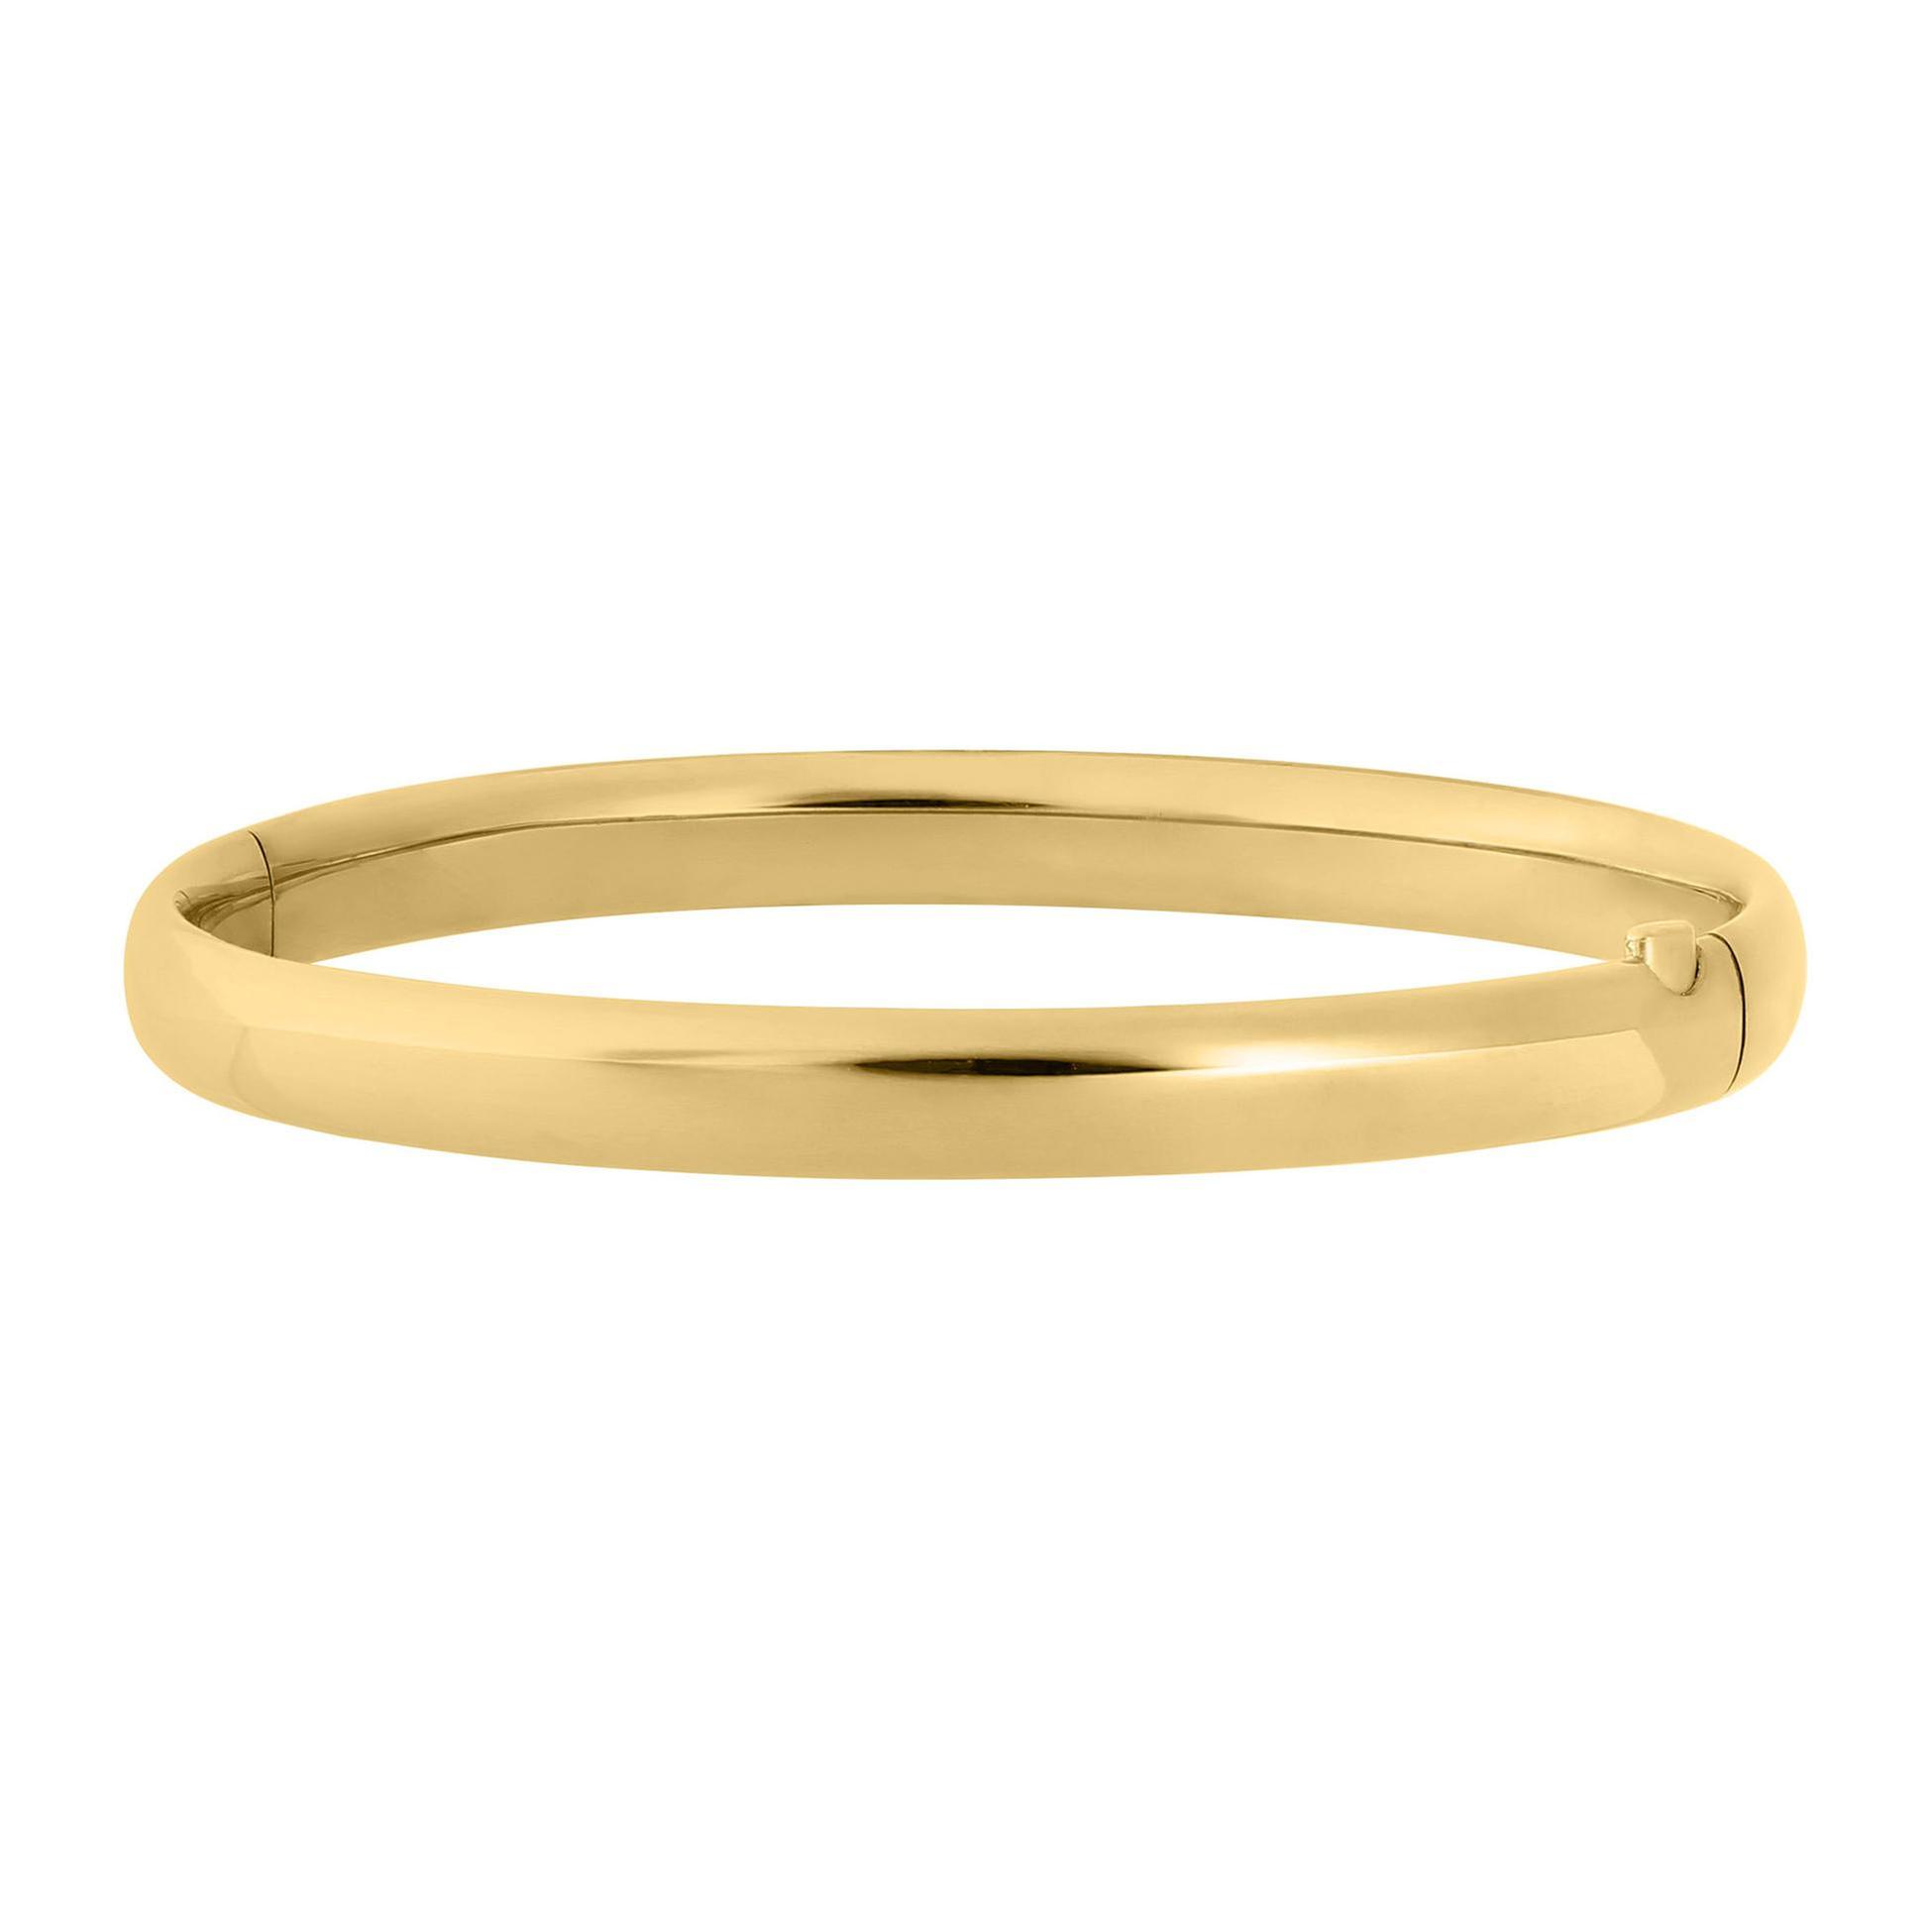 Polished Gold Filled Bangle Bracelet | 6mm